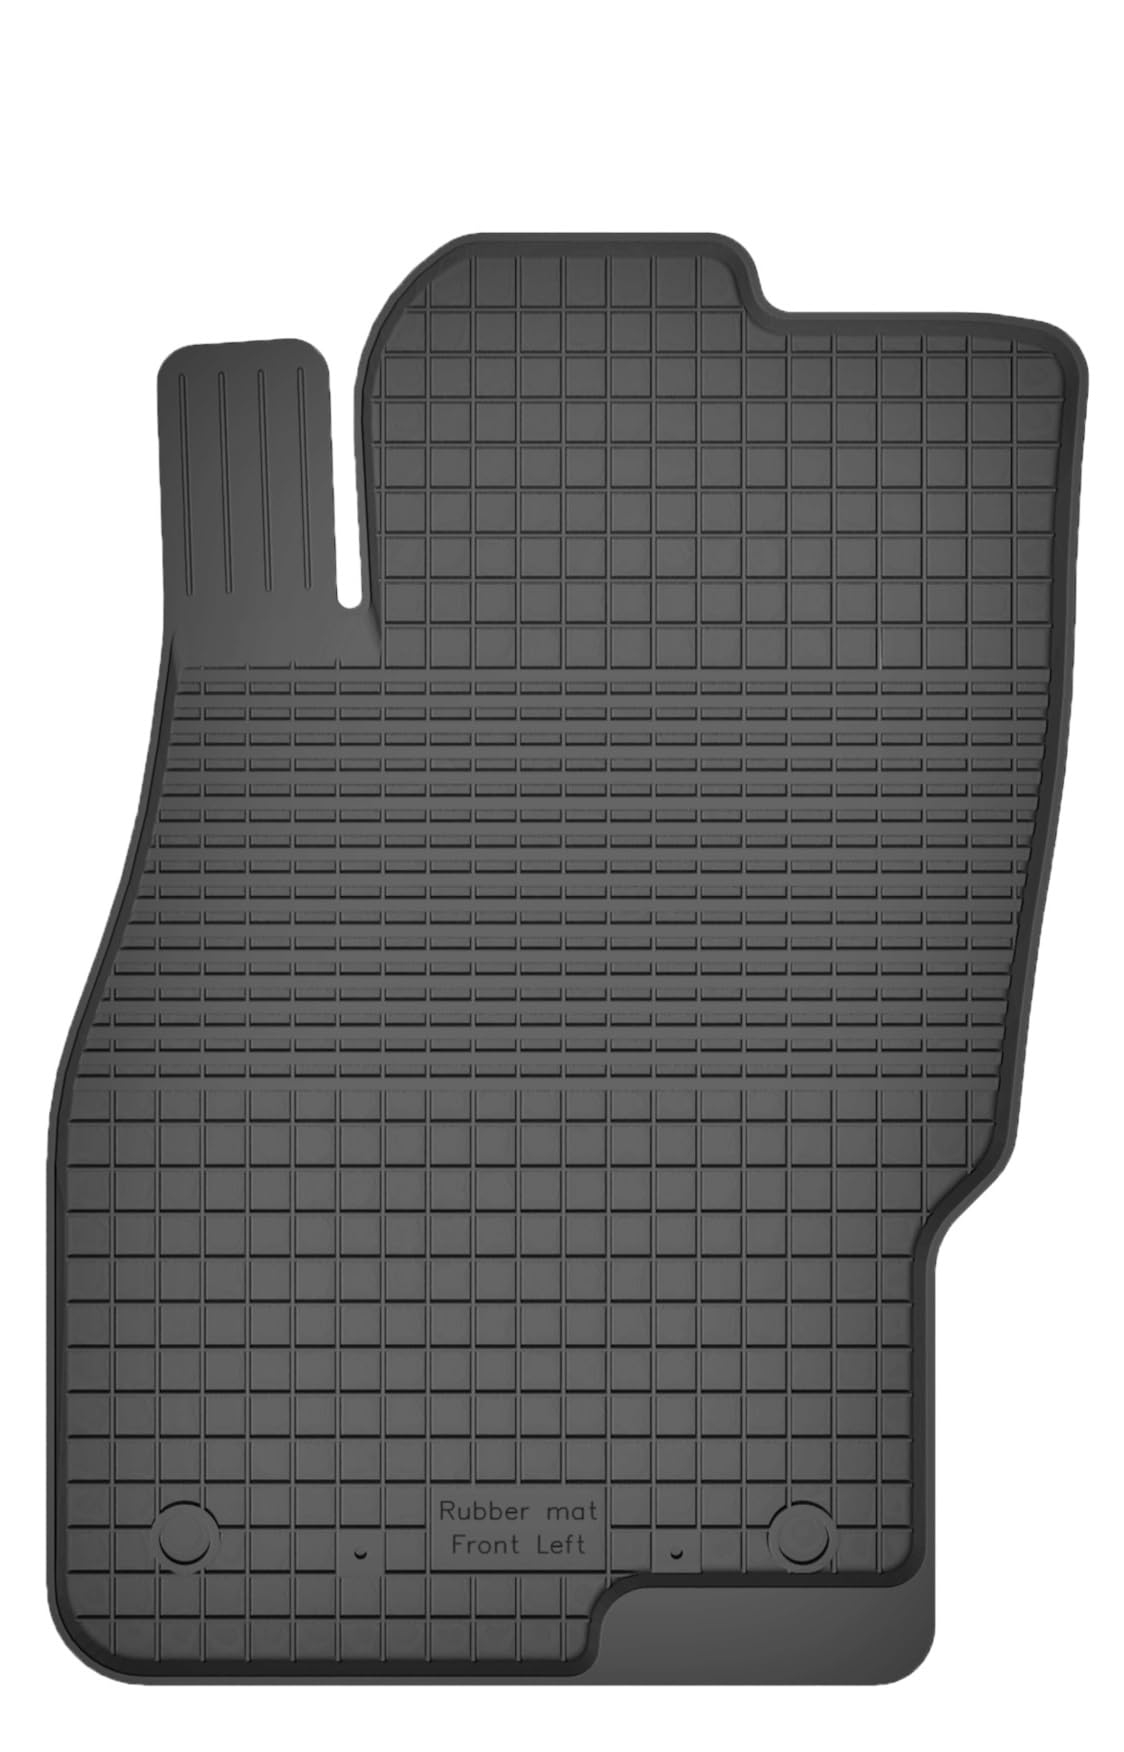 Gummimatte Fußmatte Fahrer von XTRM-CAR kompatibel mit FIAT Punto 199 Bj. 2005-2018 von XTRM-CAR